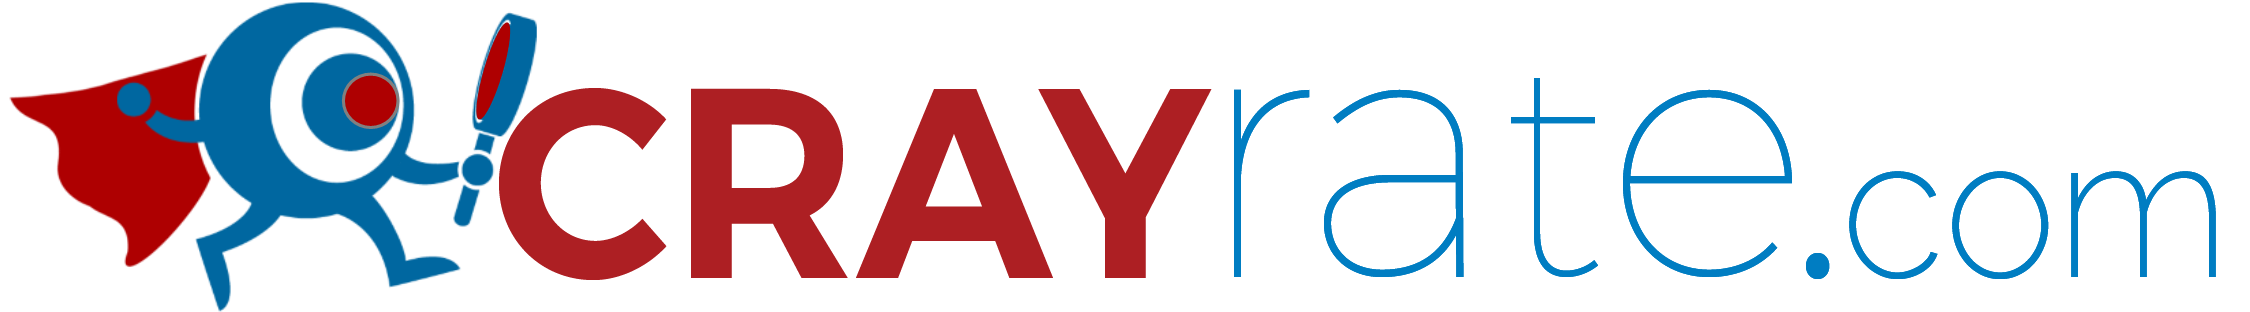 Company Logo For CrayRate.com'